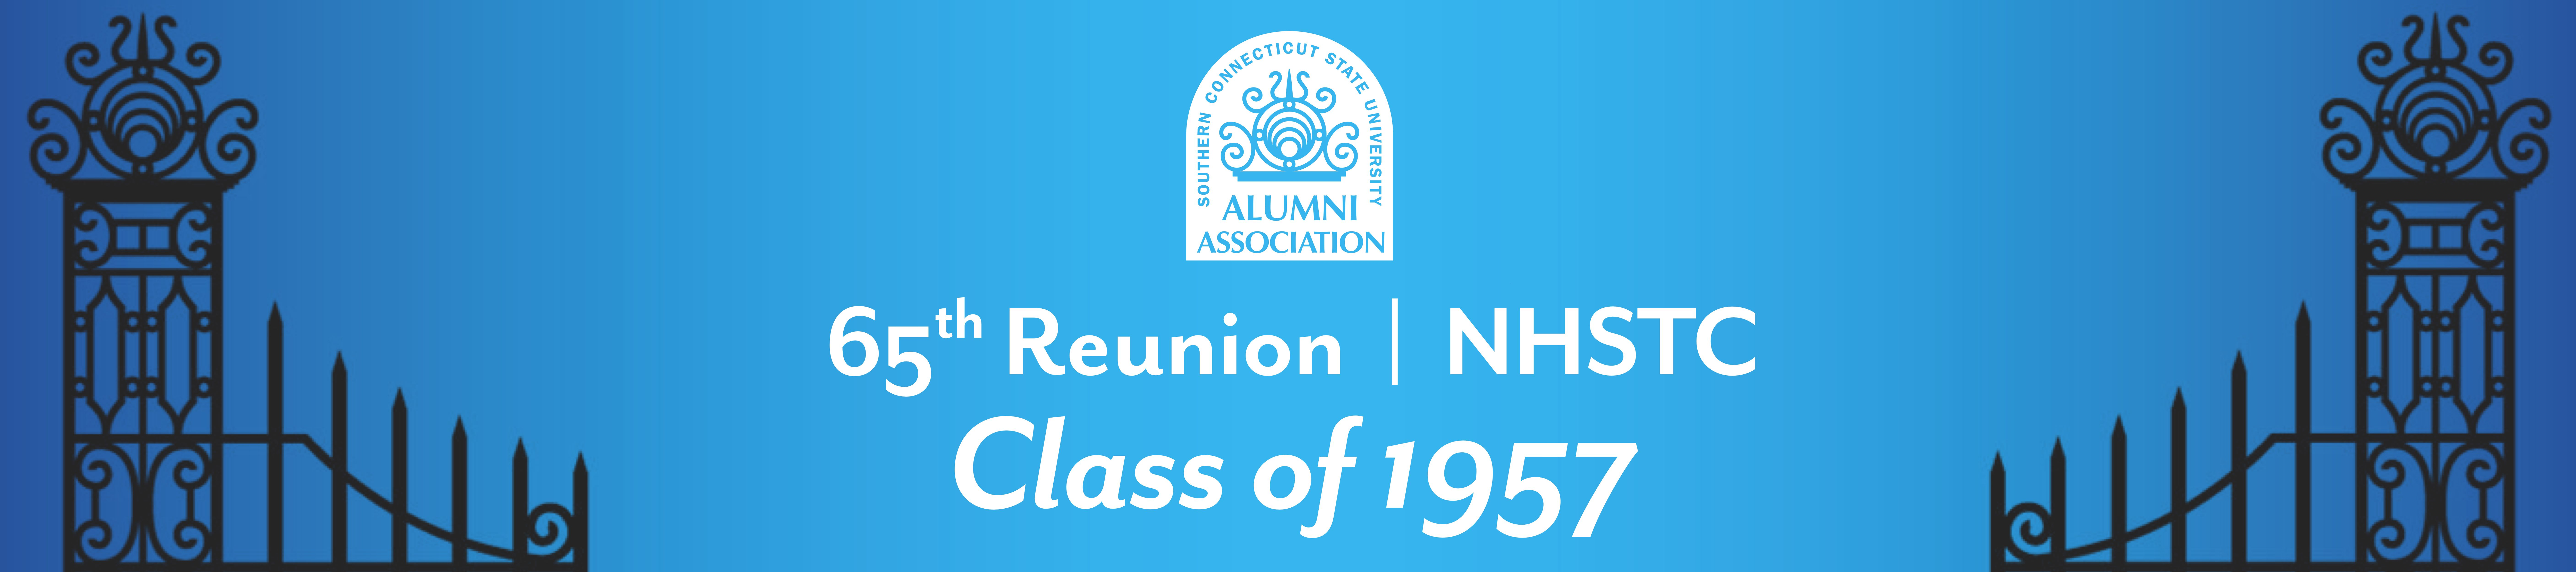 Class of 1957 Reunion